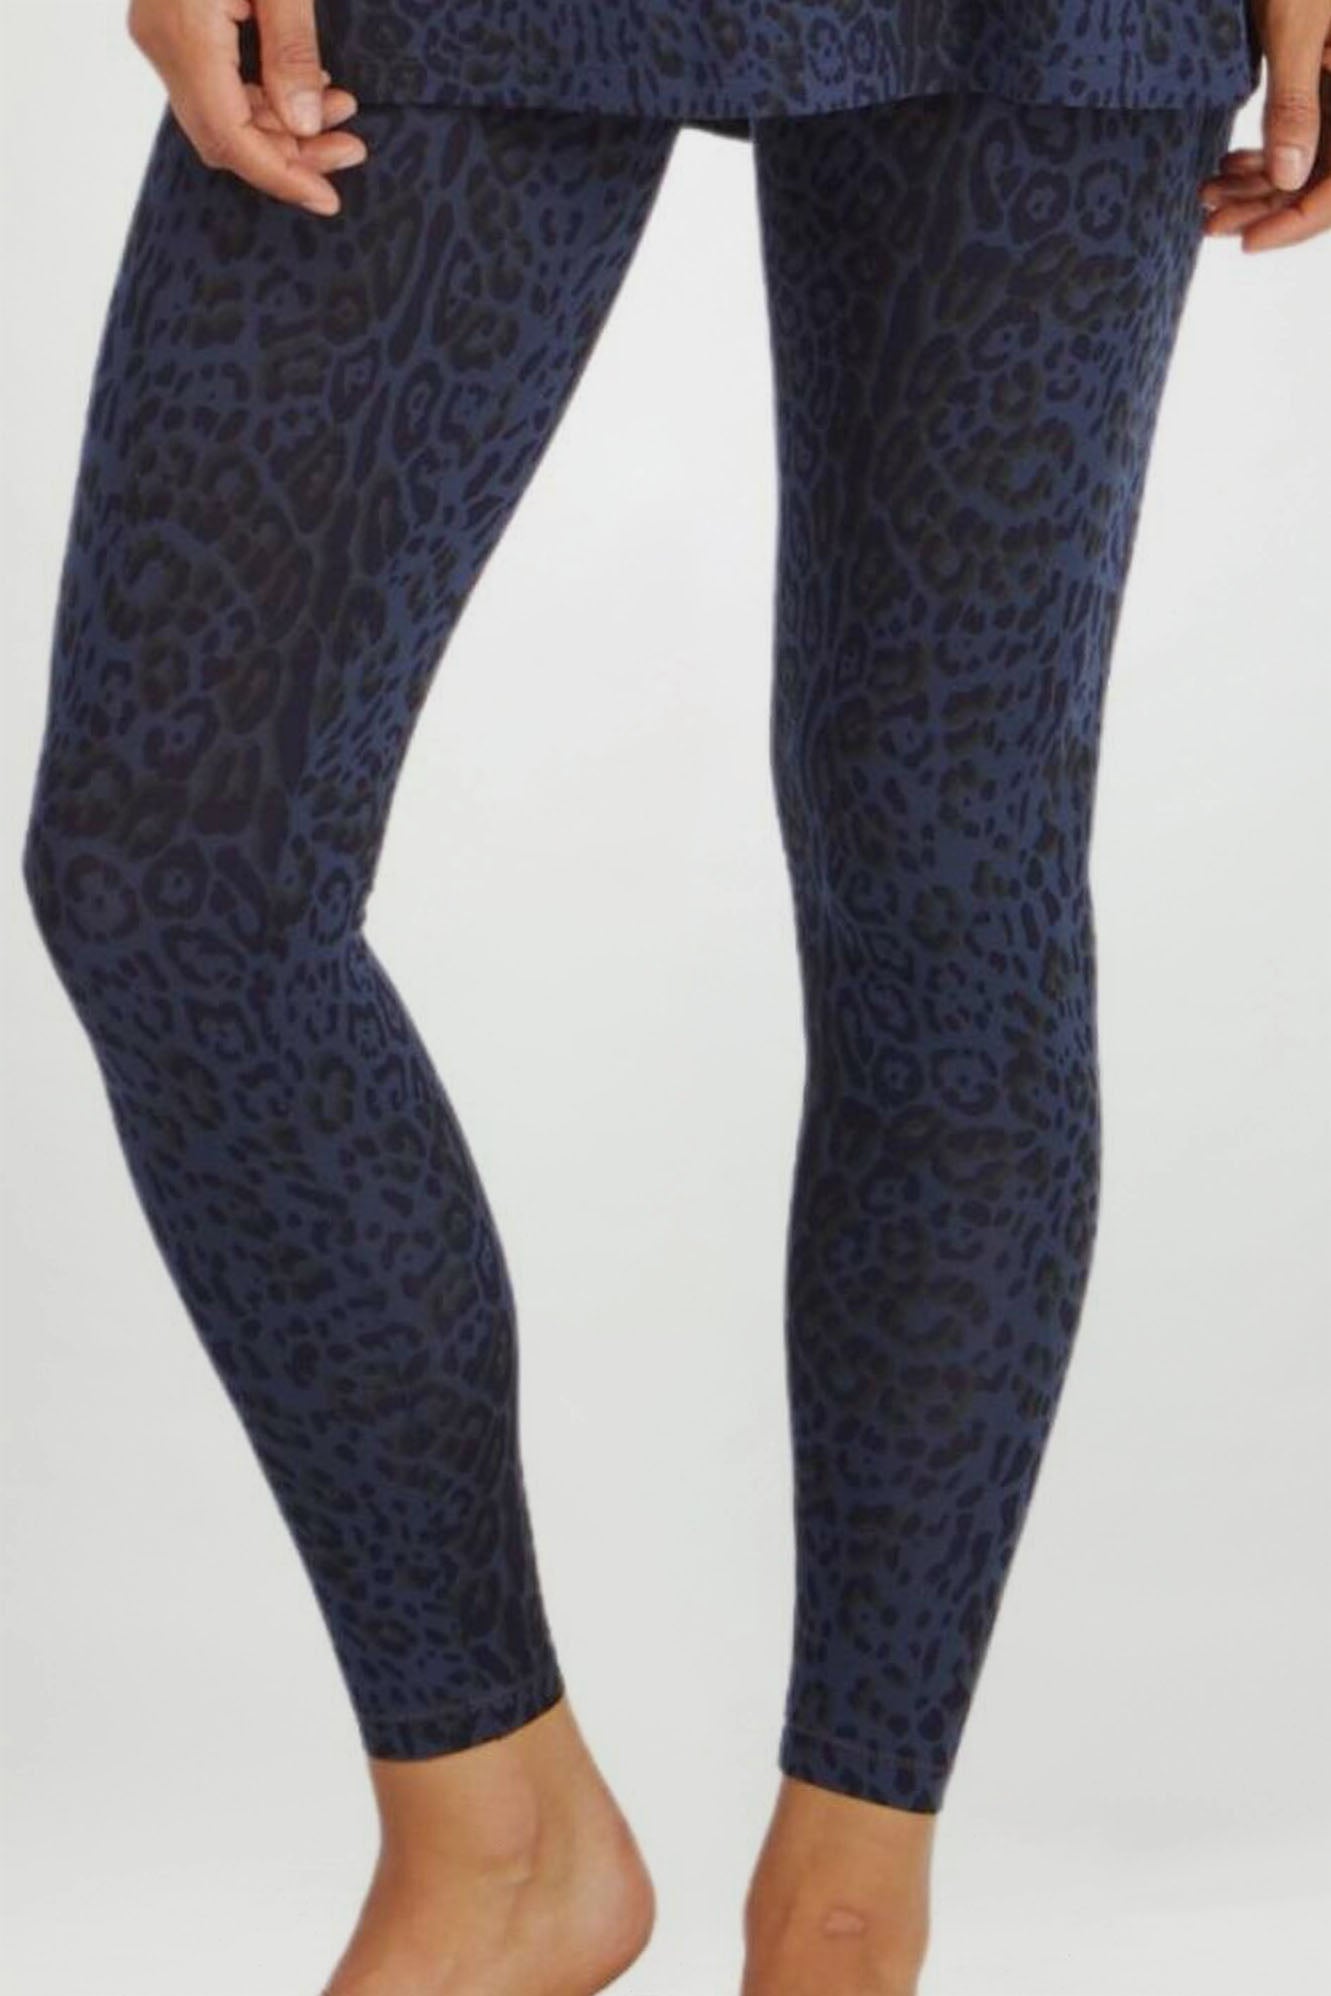 Woman wearing Tani 89118 leggings in wild indigo print